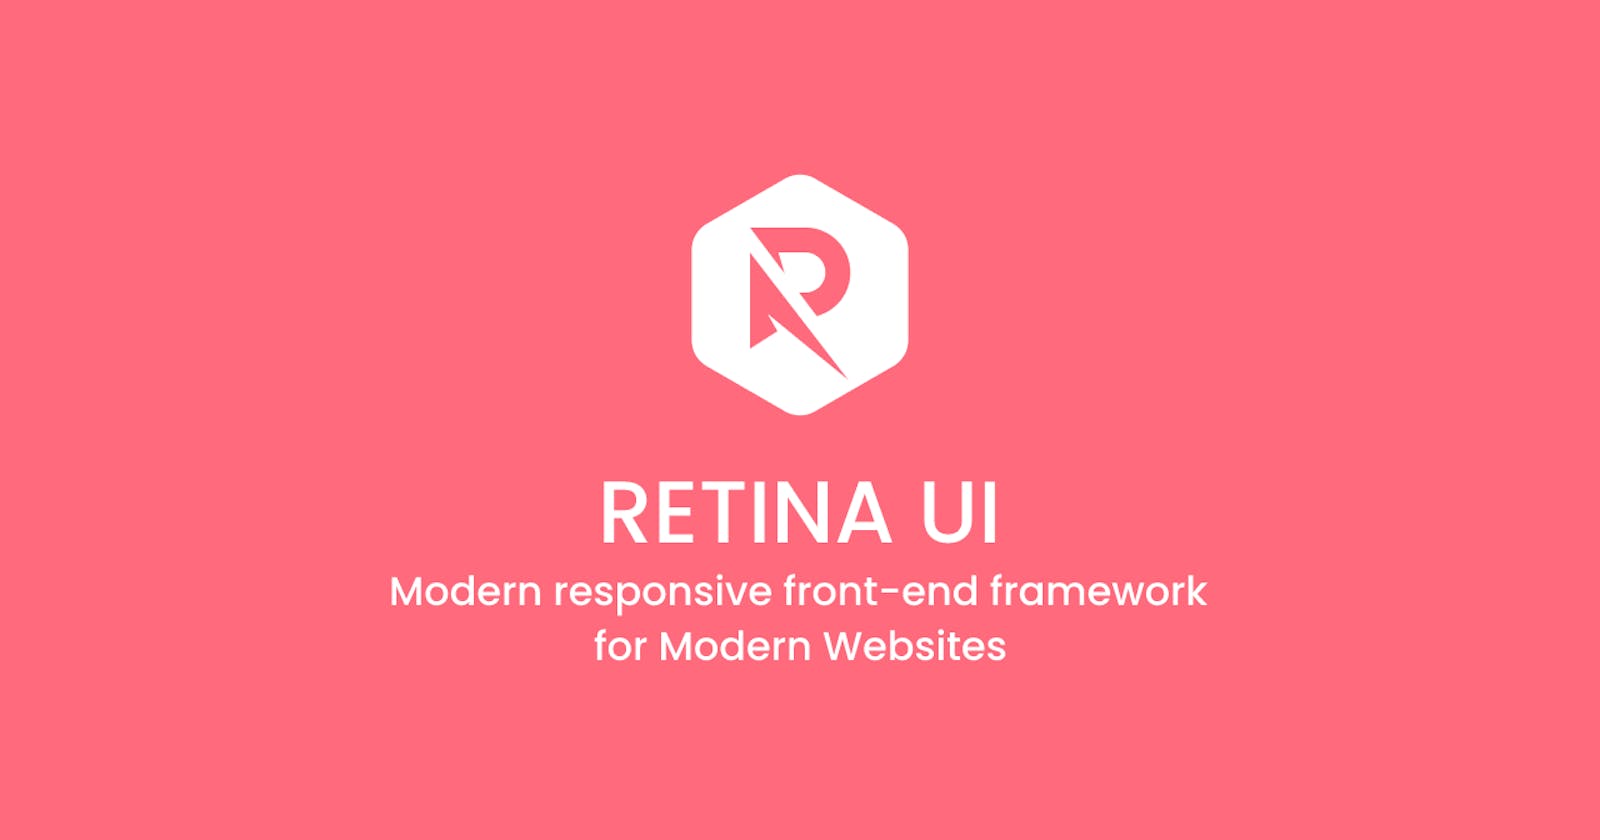 Introducing Retina UI - Modern responsive front-end framework for Modern Websites.